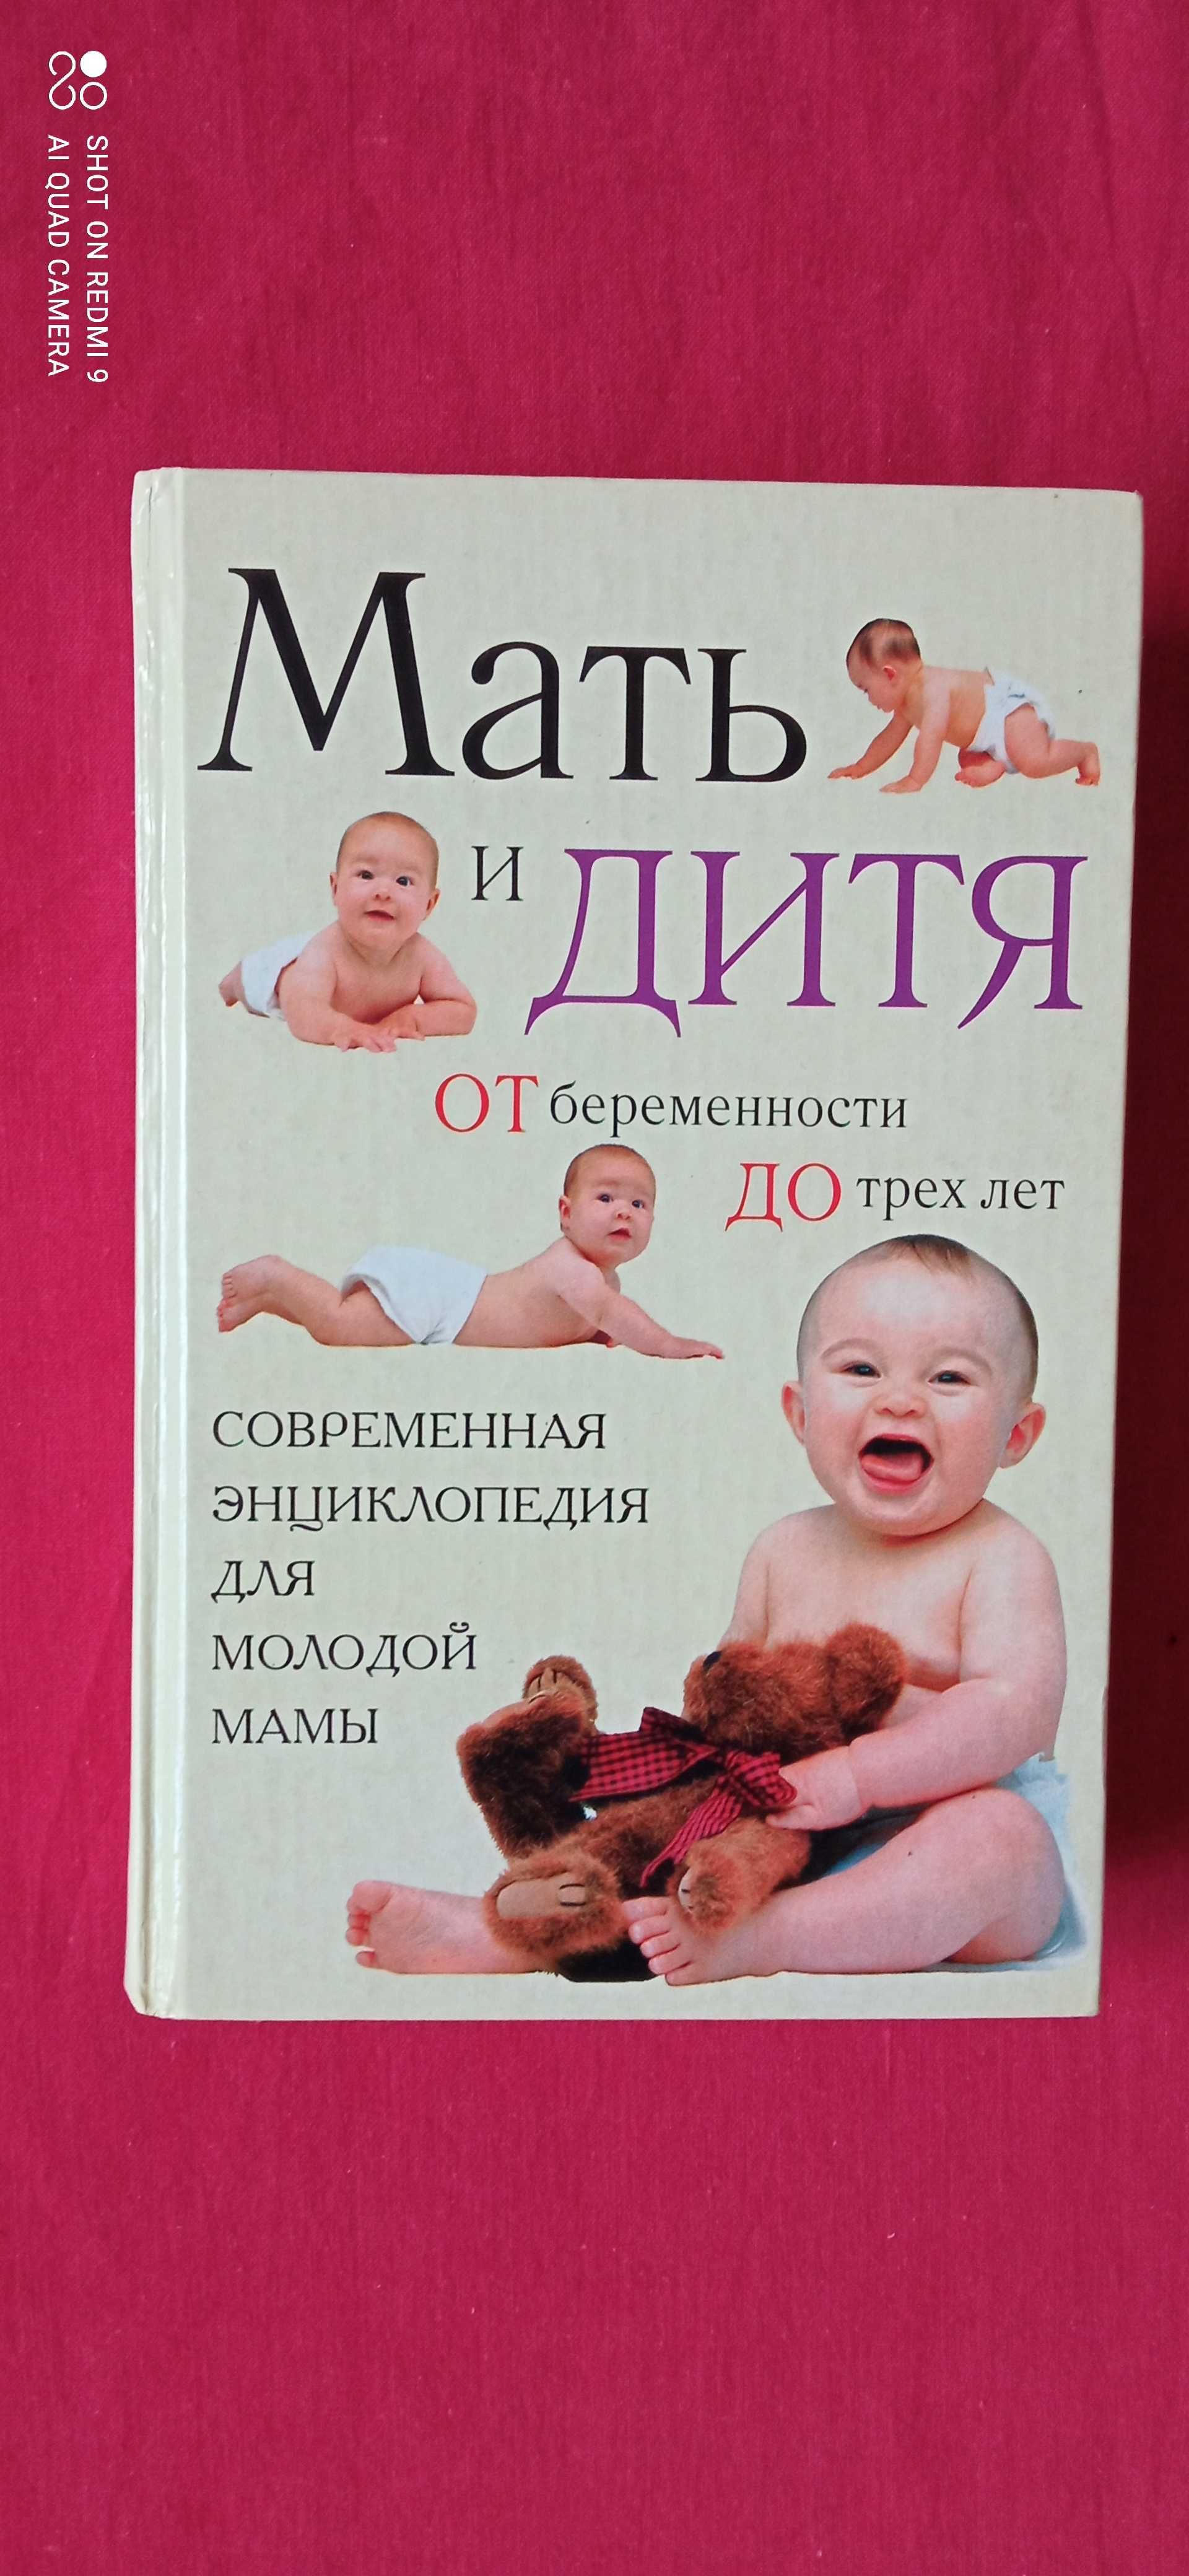 «Мать и дитя от беременности до трех лет», "Золотой ключик" Толстой.